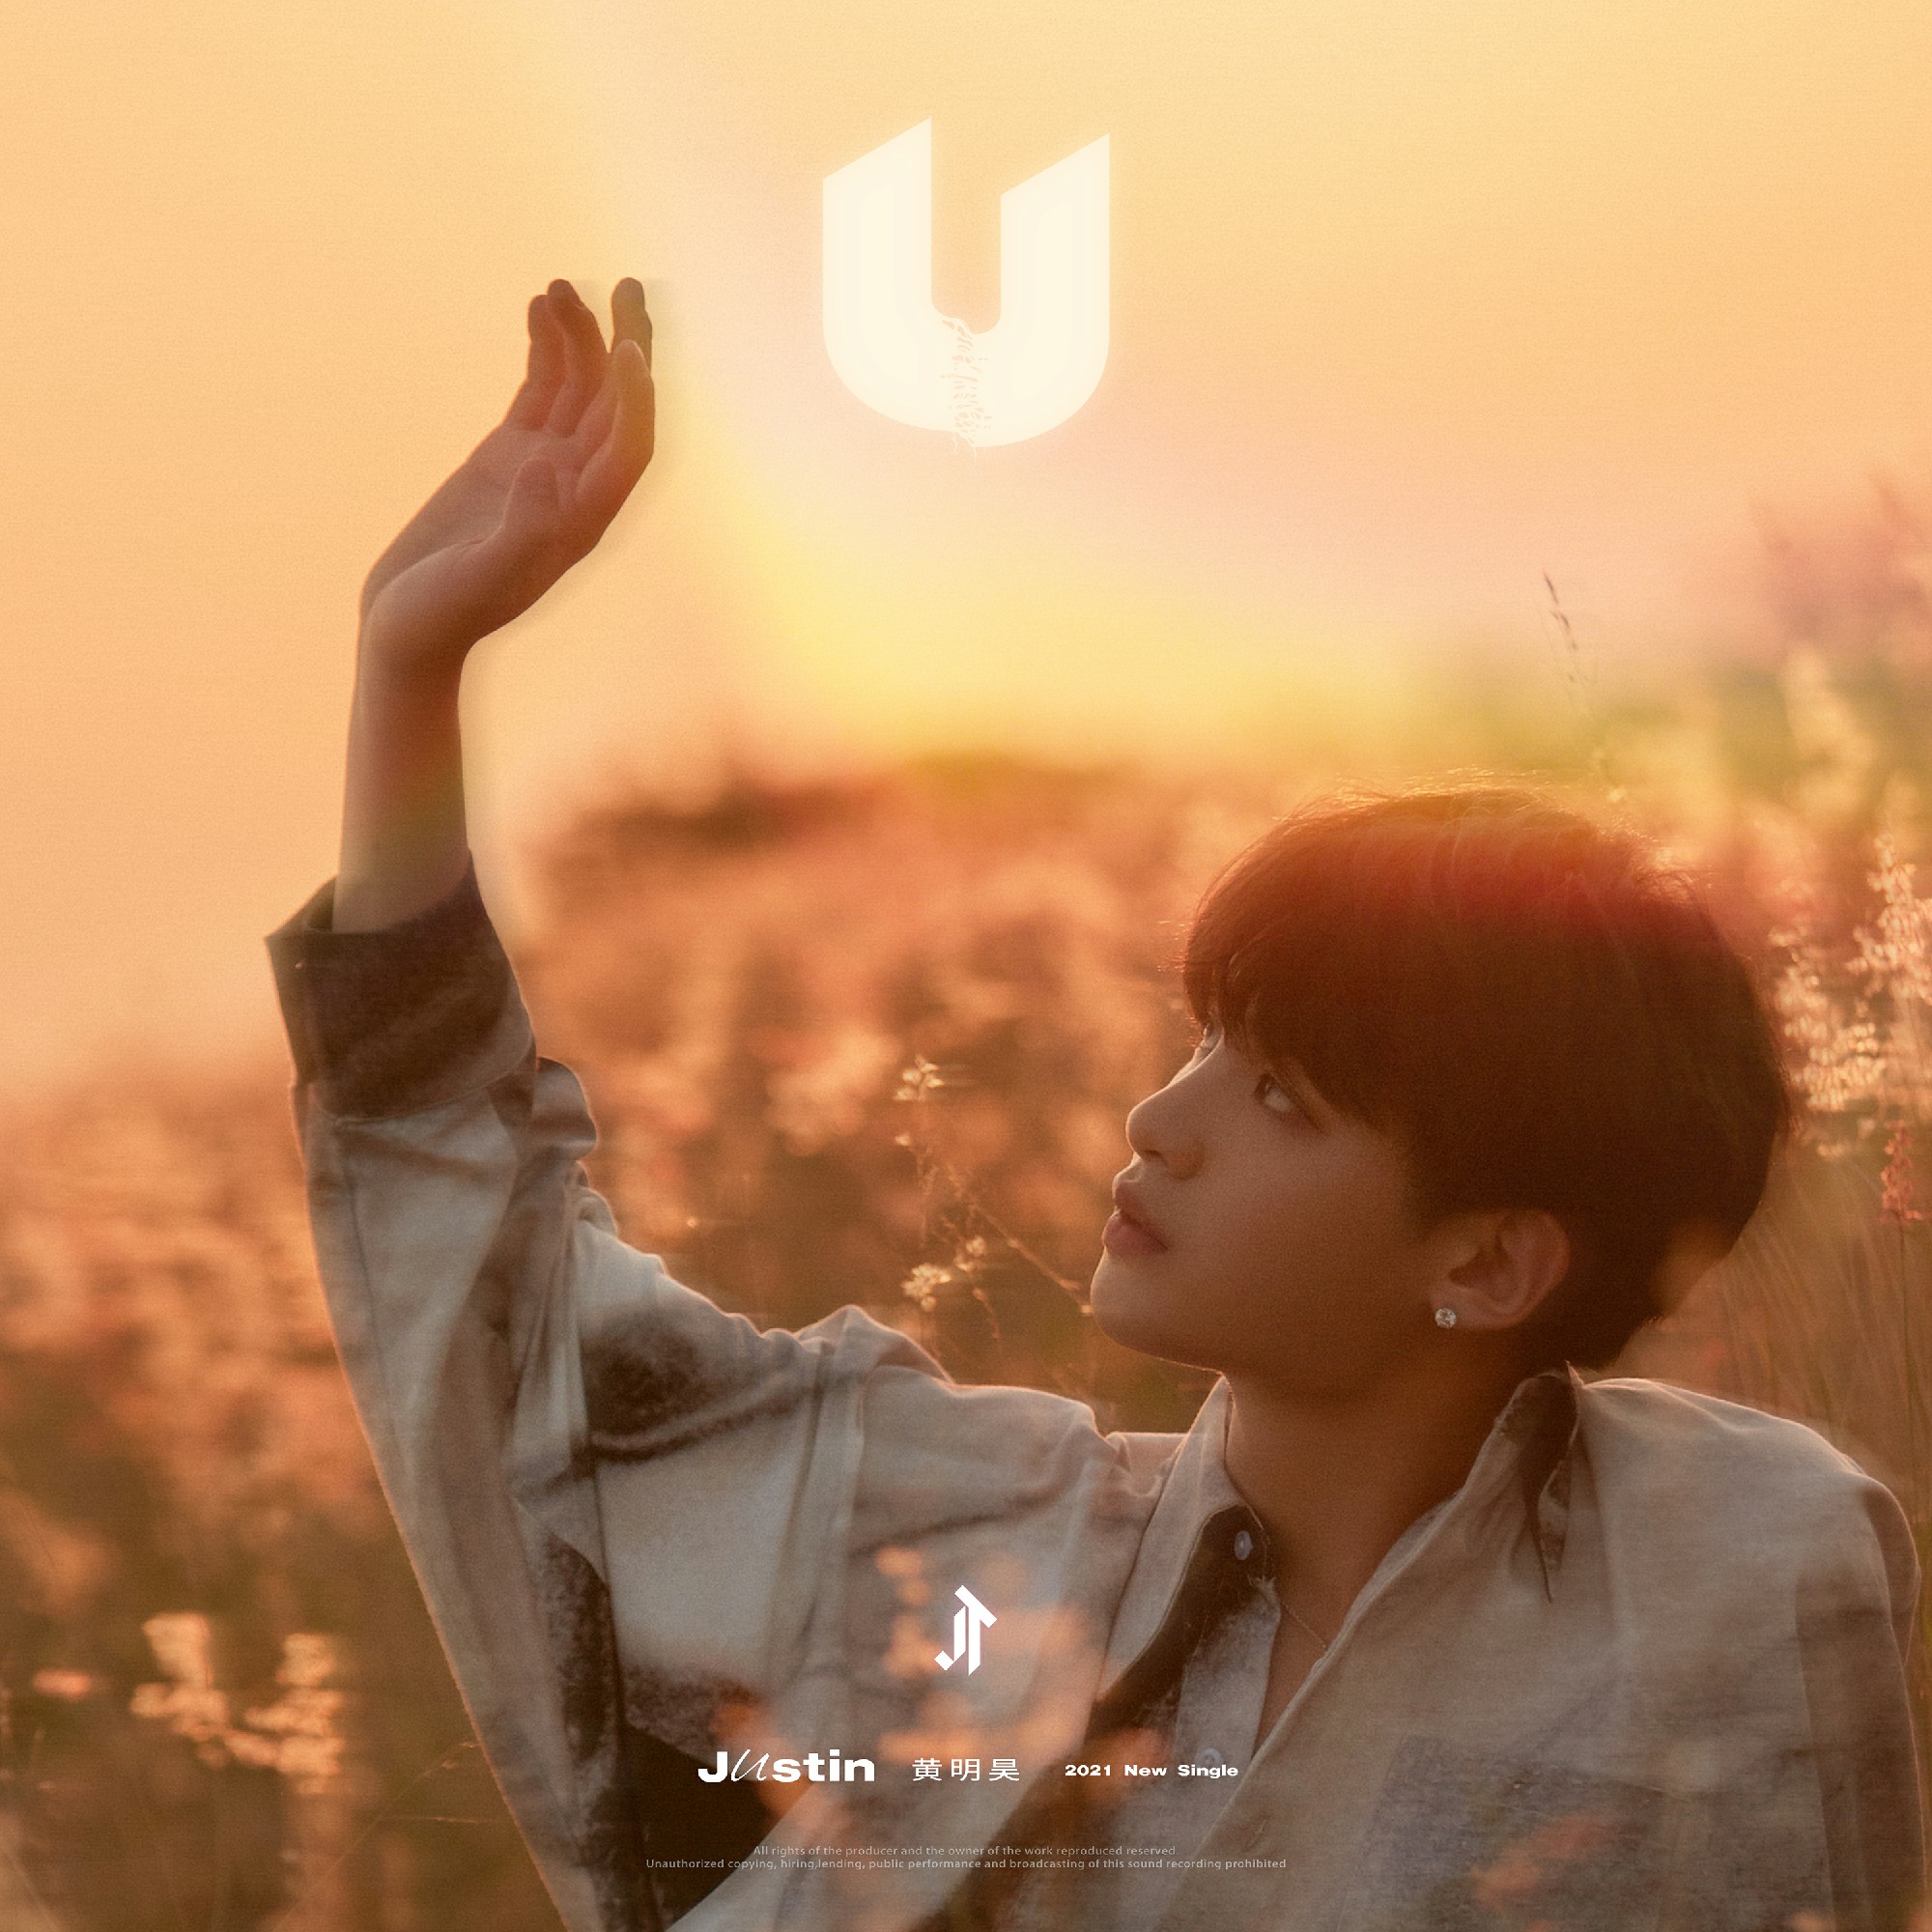 黄明昊全新数字单曲《U》正式发布 与你飞驰音乐地平线